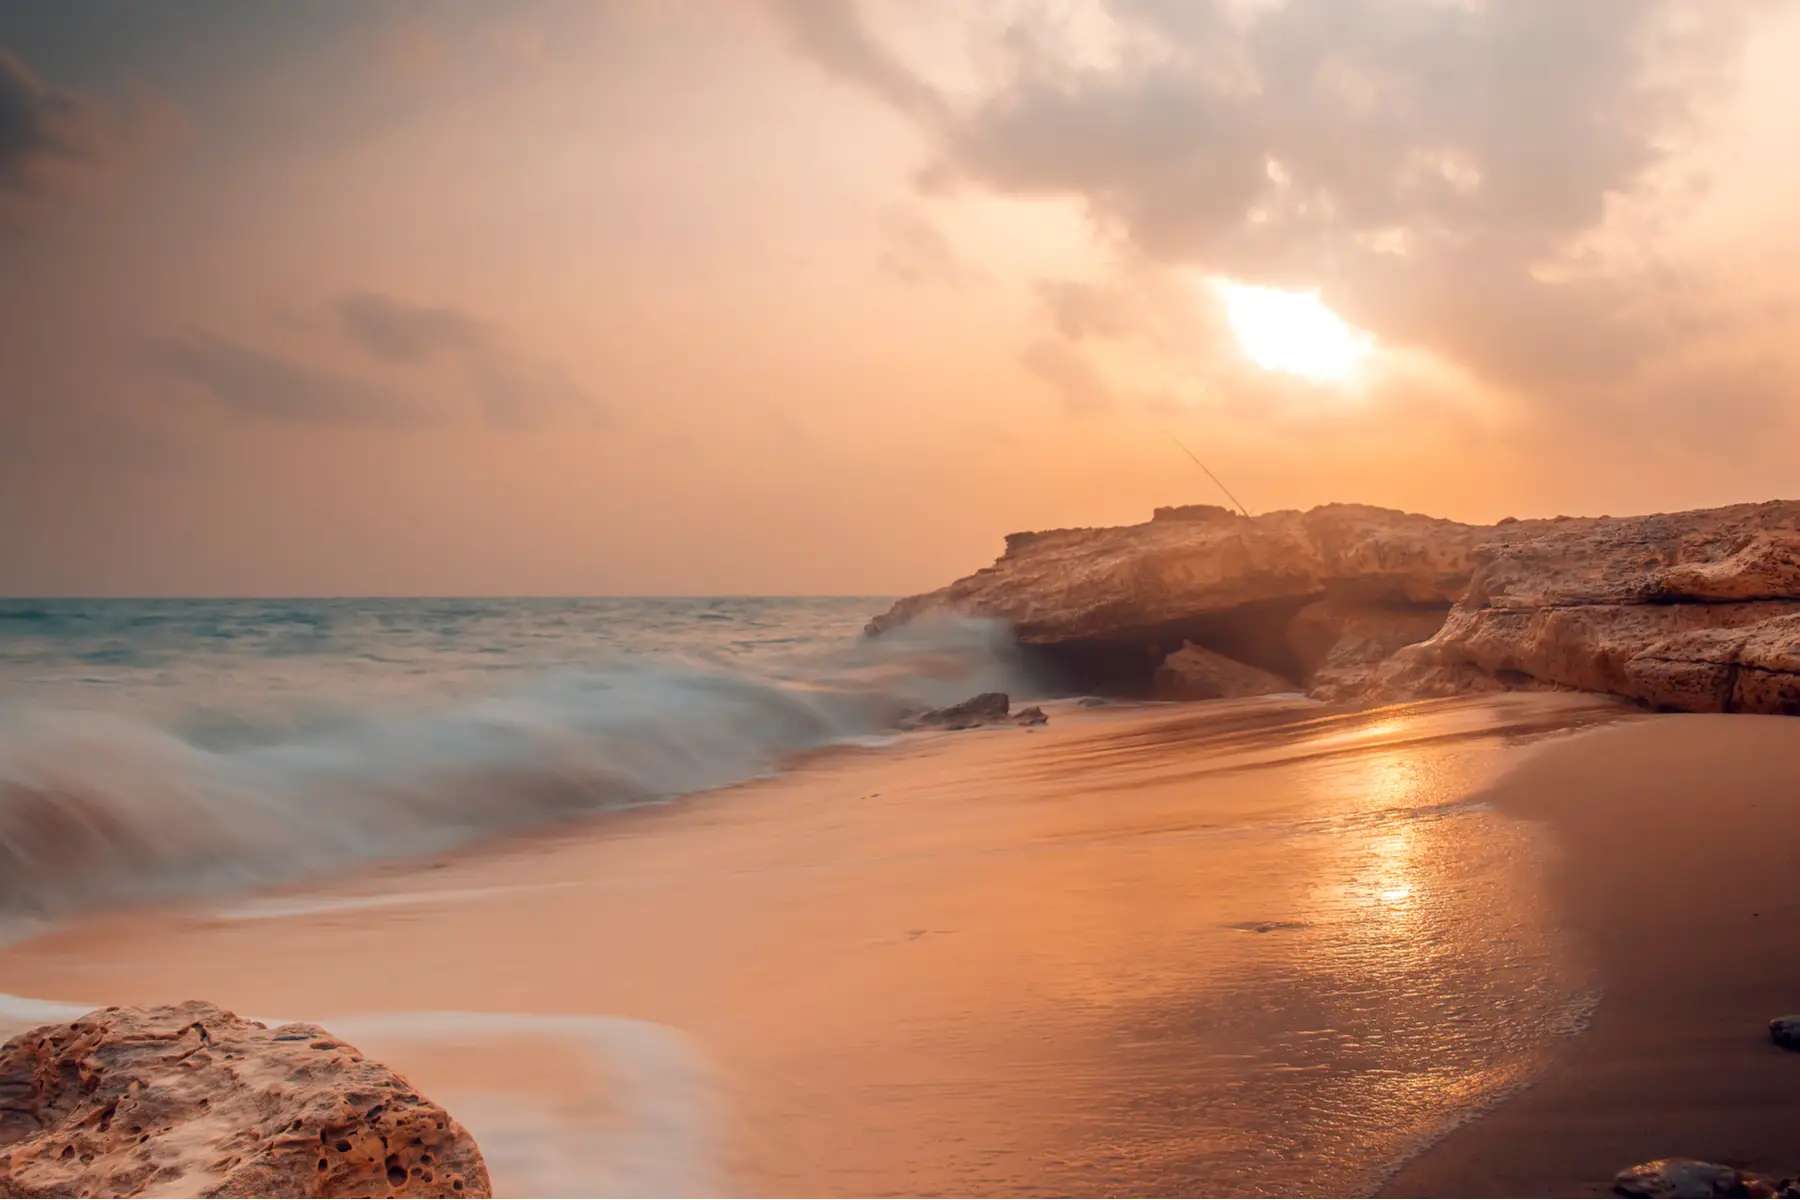 Fuwairit Beach in Qatar